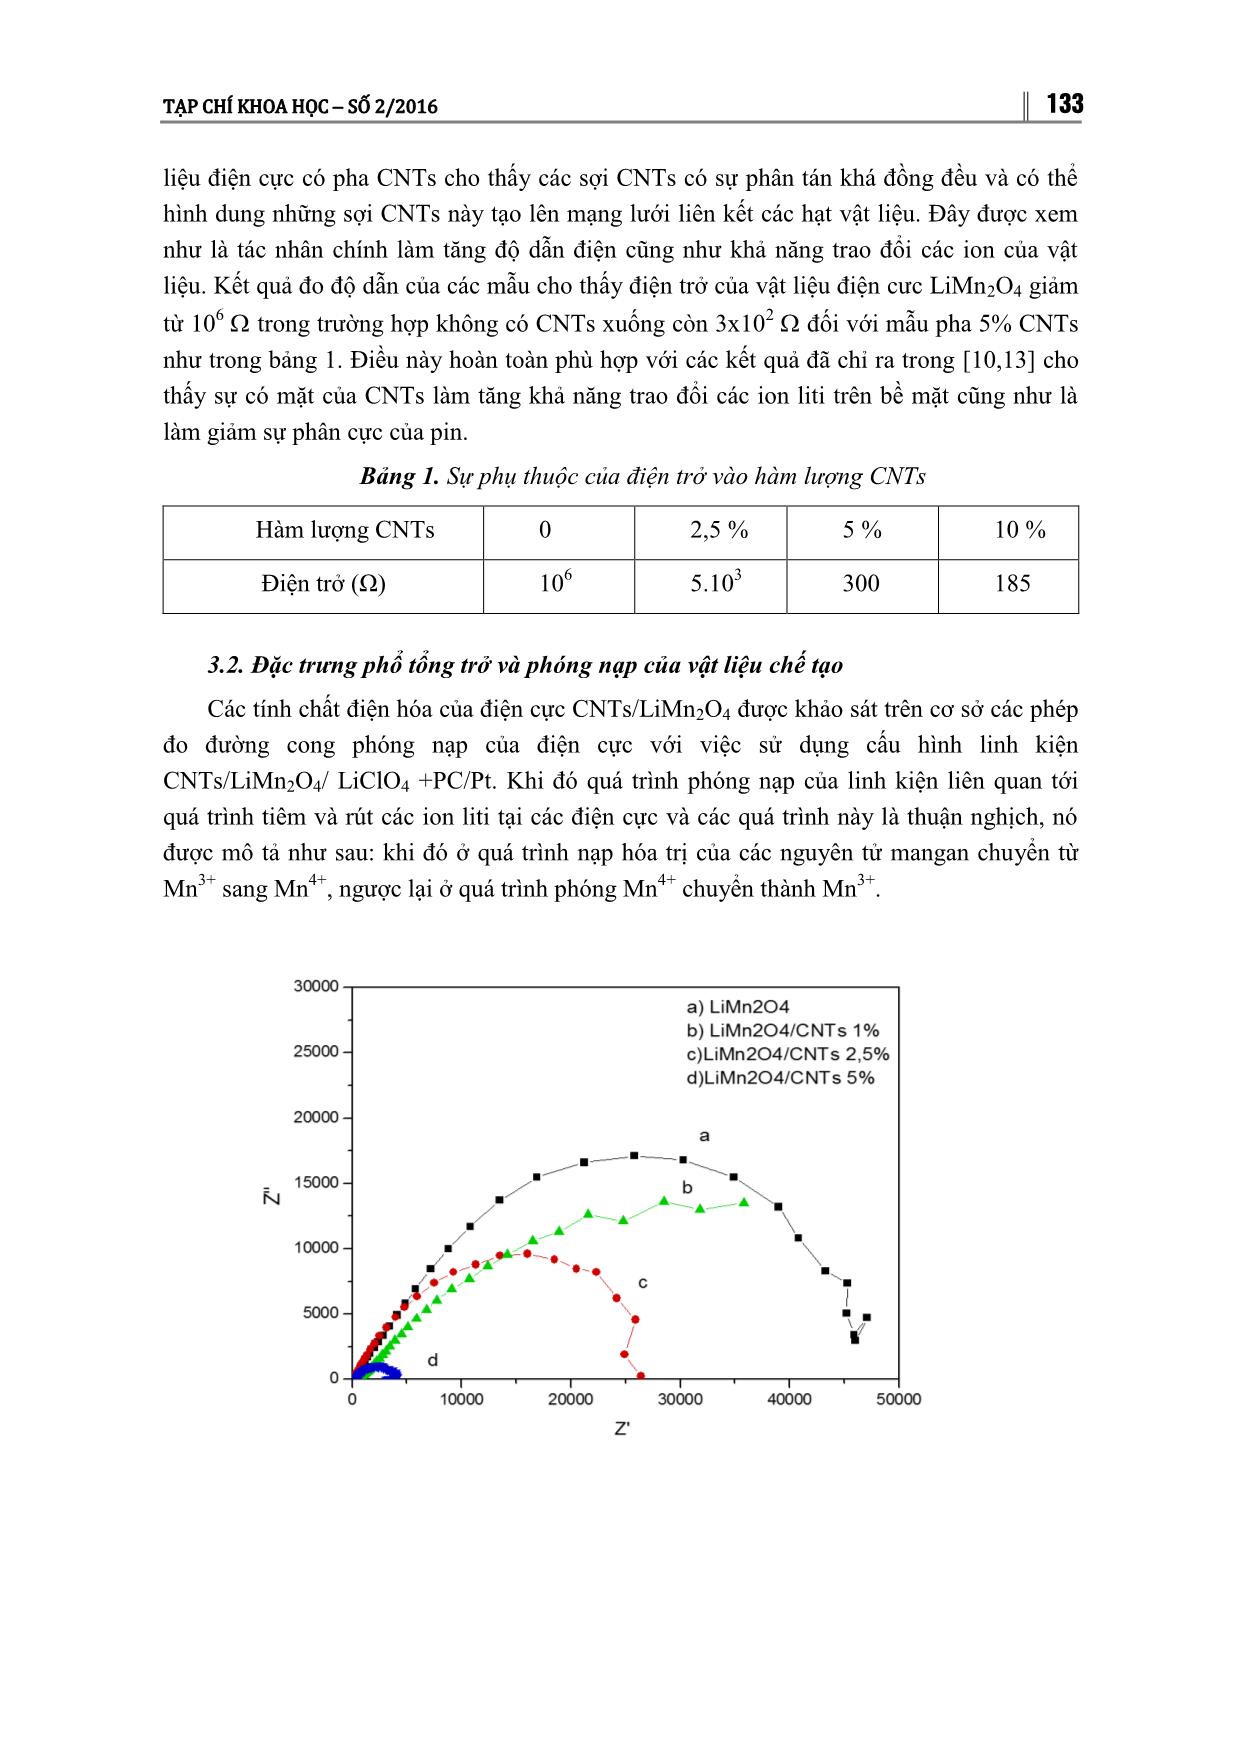 Nghiên cứu chế tạo vật liệu catot composit LIMN₂O₄/CNTˢ ứng dụng cho pin ion liti trang 4